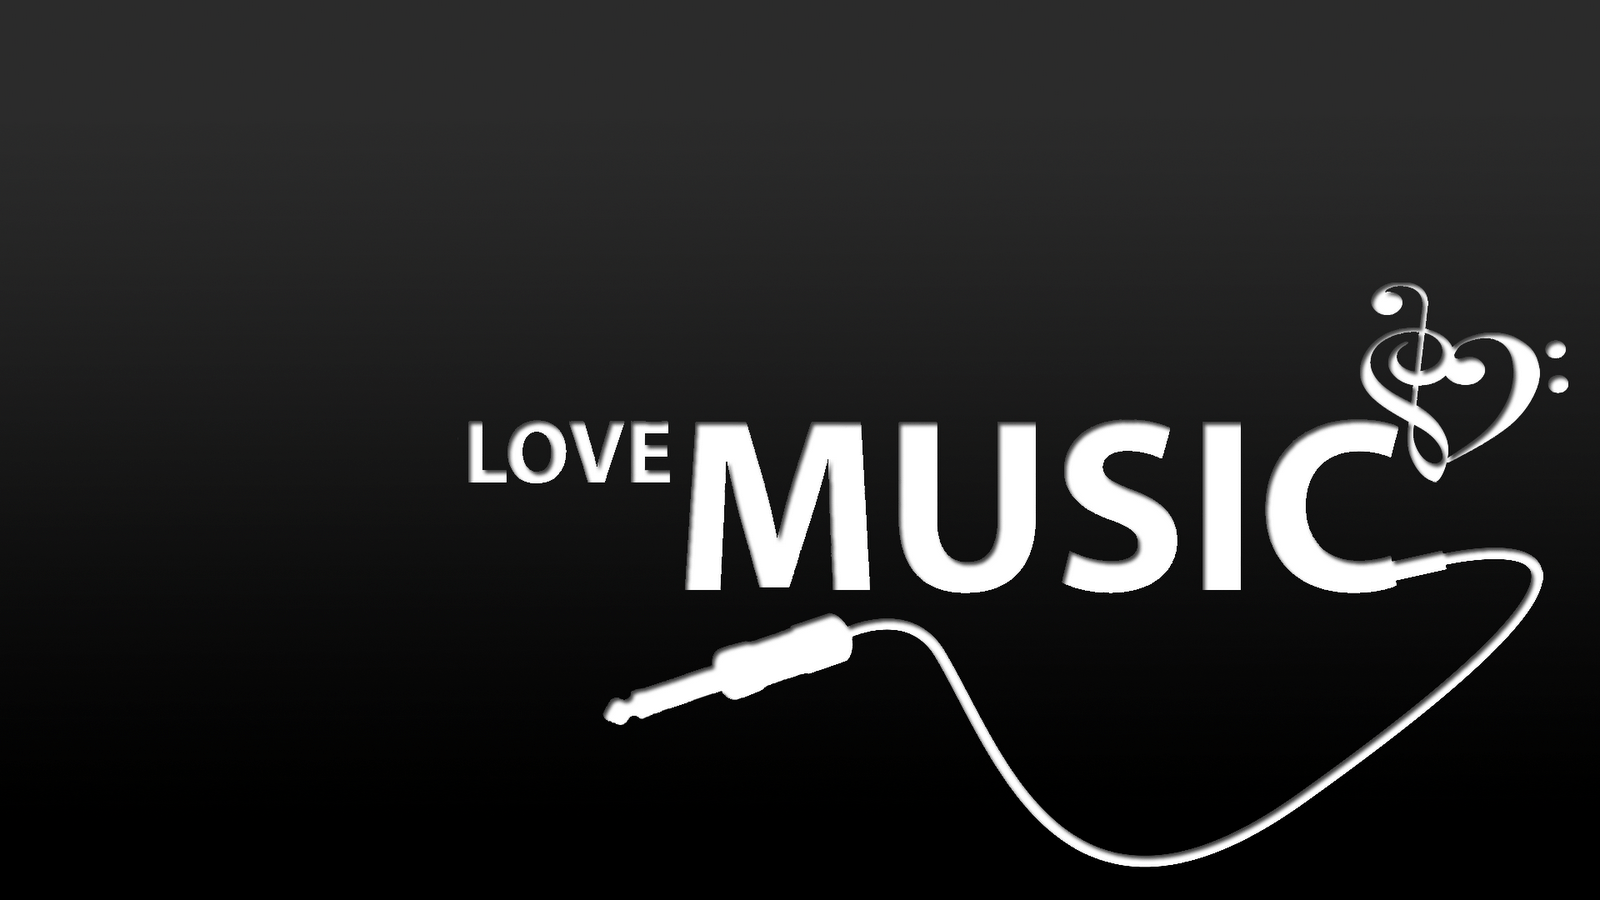 Bạn yêu âm nhạc và muốn có một bức tranh nền nhẹ nhàng, độc đáo? Hãy tải về hình nền Live Love Music để thể hiện sự đam mê của bạn. Bạn sẽ tìm thấy sự lựa chọn hoàn hảo cho điện thoại hoặc máy tính của mình với hình ảnh Live Love Music Wallpaper của chúng tôi.